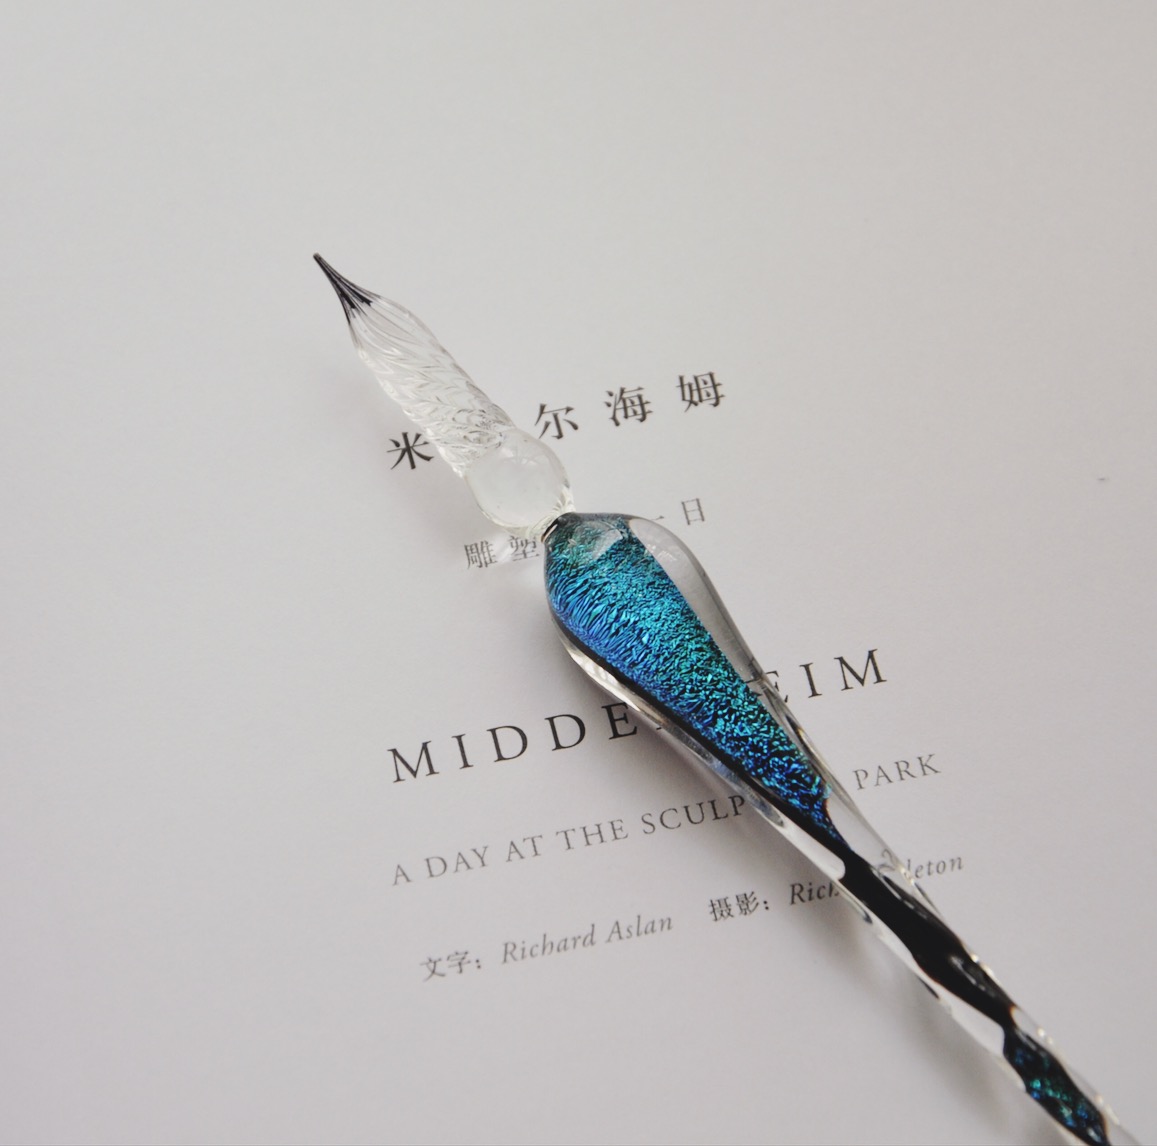 手写笔 玻璃笔纯手工制作 原创玻璃笔套装 向鱼 星空星辰蘸水笔抖音网红水晶笔墨水星空